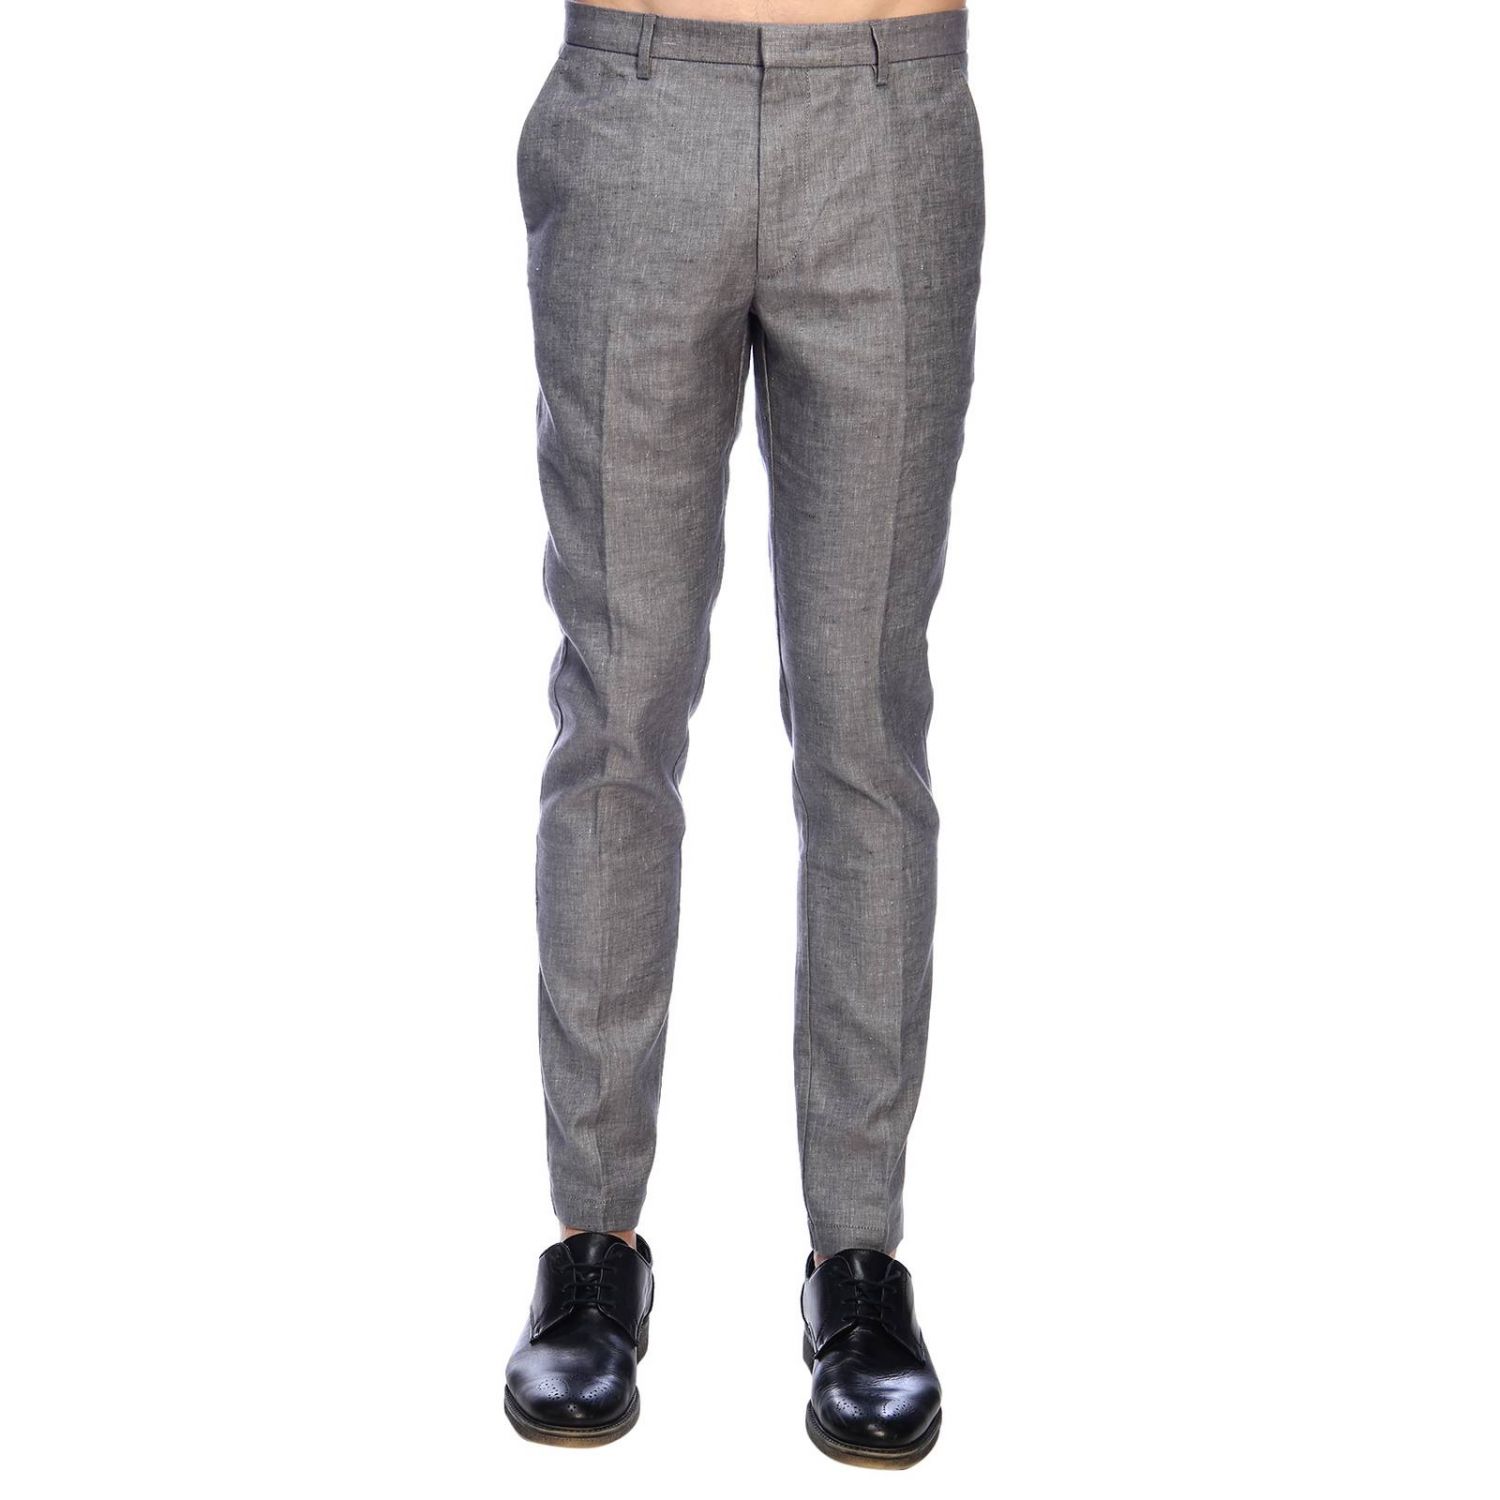 Hugo Boss Outlet: Pants men - Grey | Pants Hugo Boss 3W10215491 KAITO ...